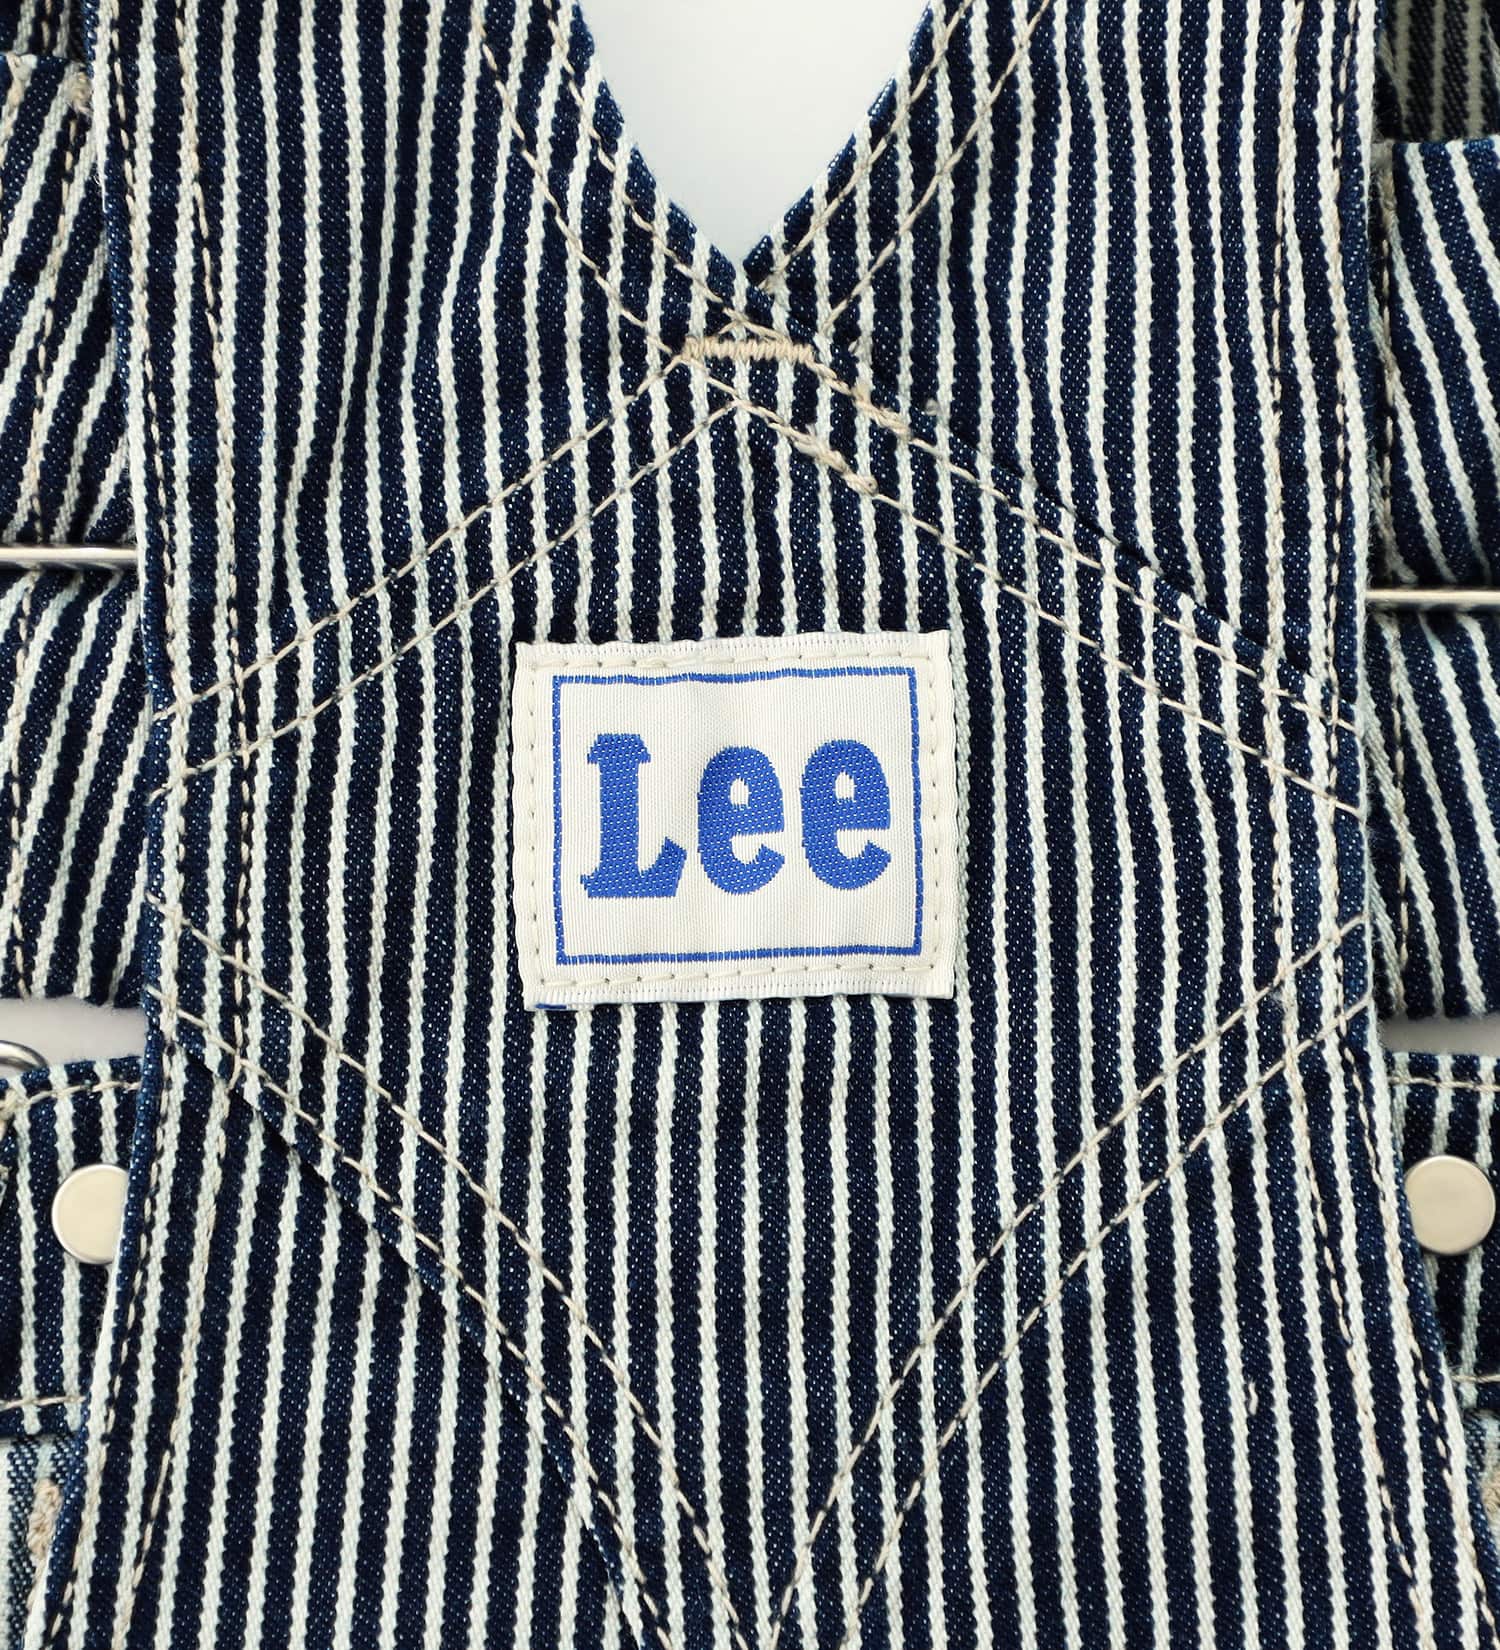 Lee(リー)の【80-100cm】ベビー ジャンパースカート|オールインワン/ジャンパースカート/キッズ|ヒッコリー